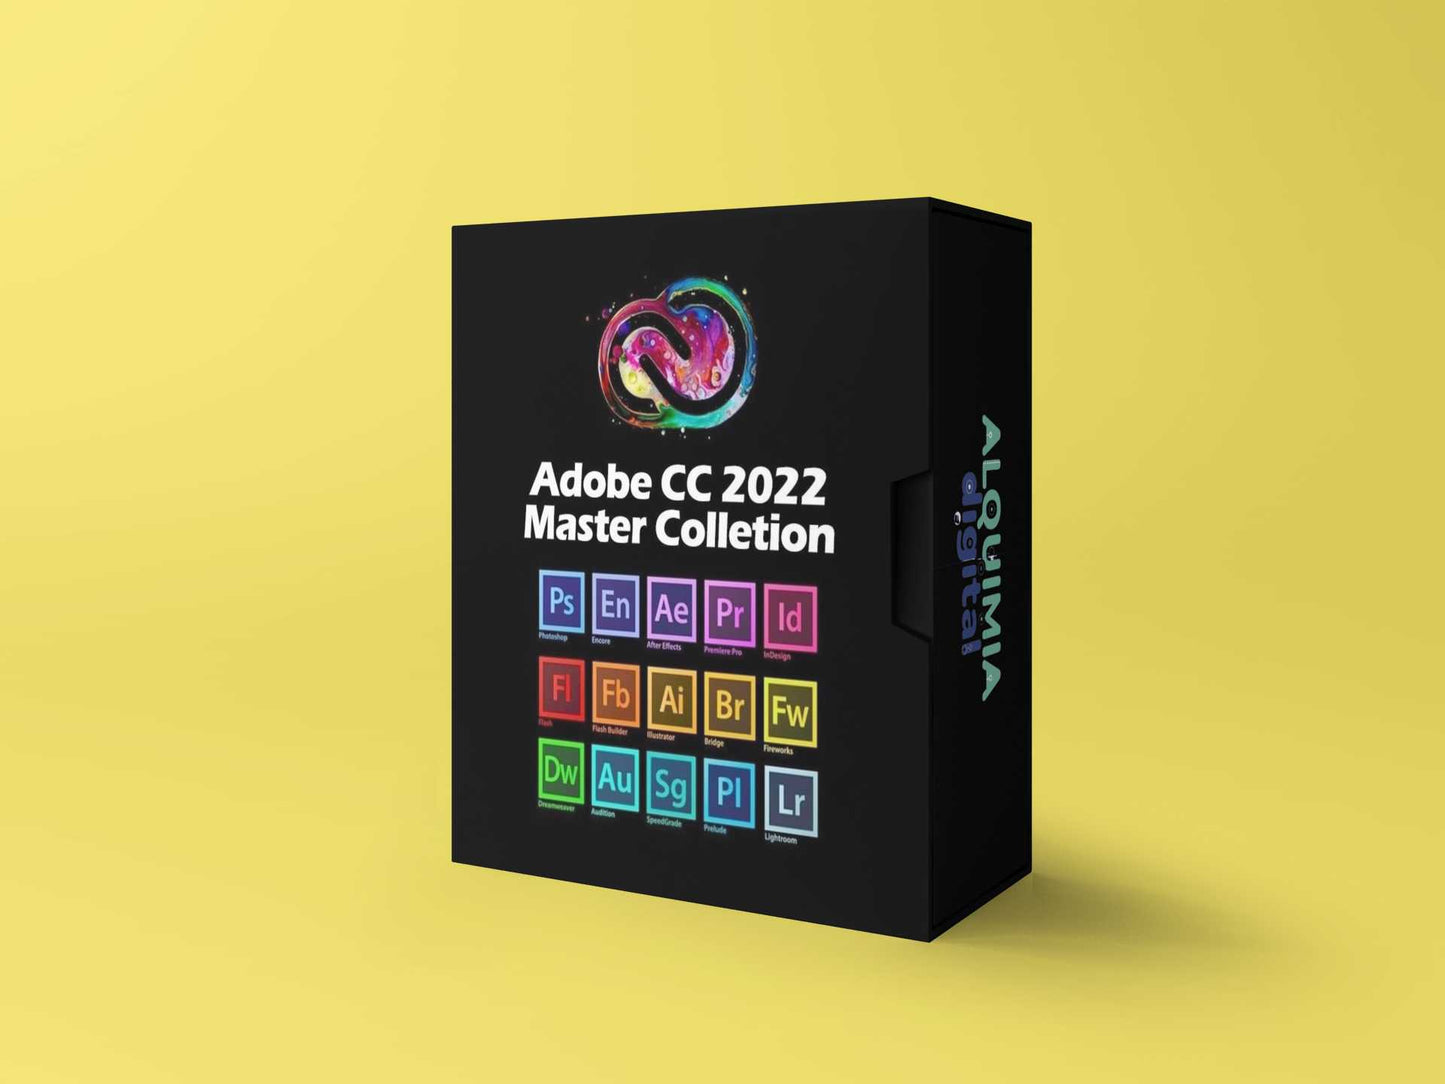 Adobe M‌a‌s‌t‌er‌ Collection ‌C‌C‌ ‌2‌0‌2‌2‌ para ‌W‌i‌n‌d‌o‌w‌s